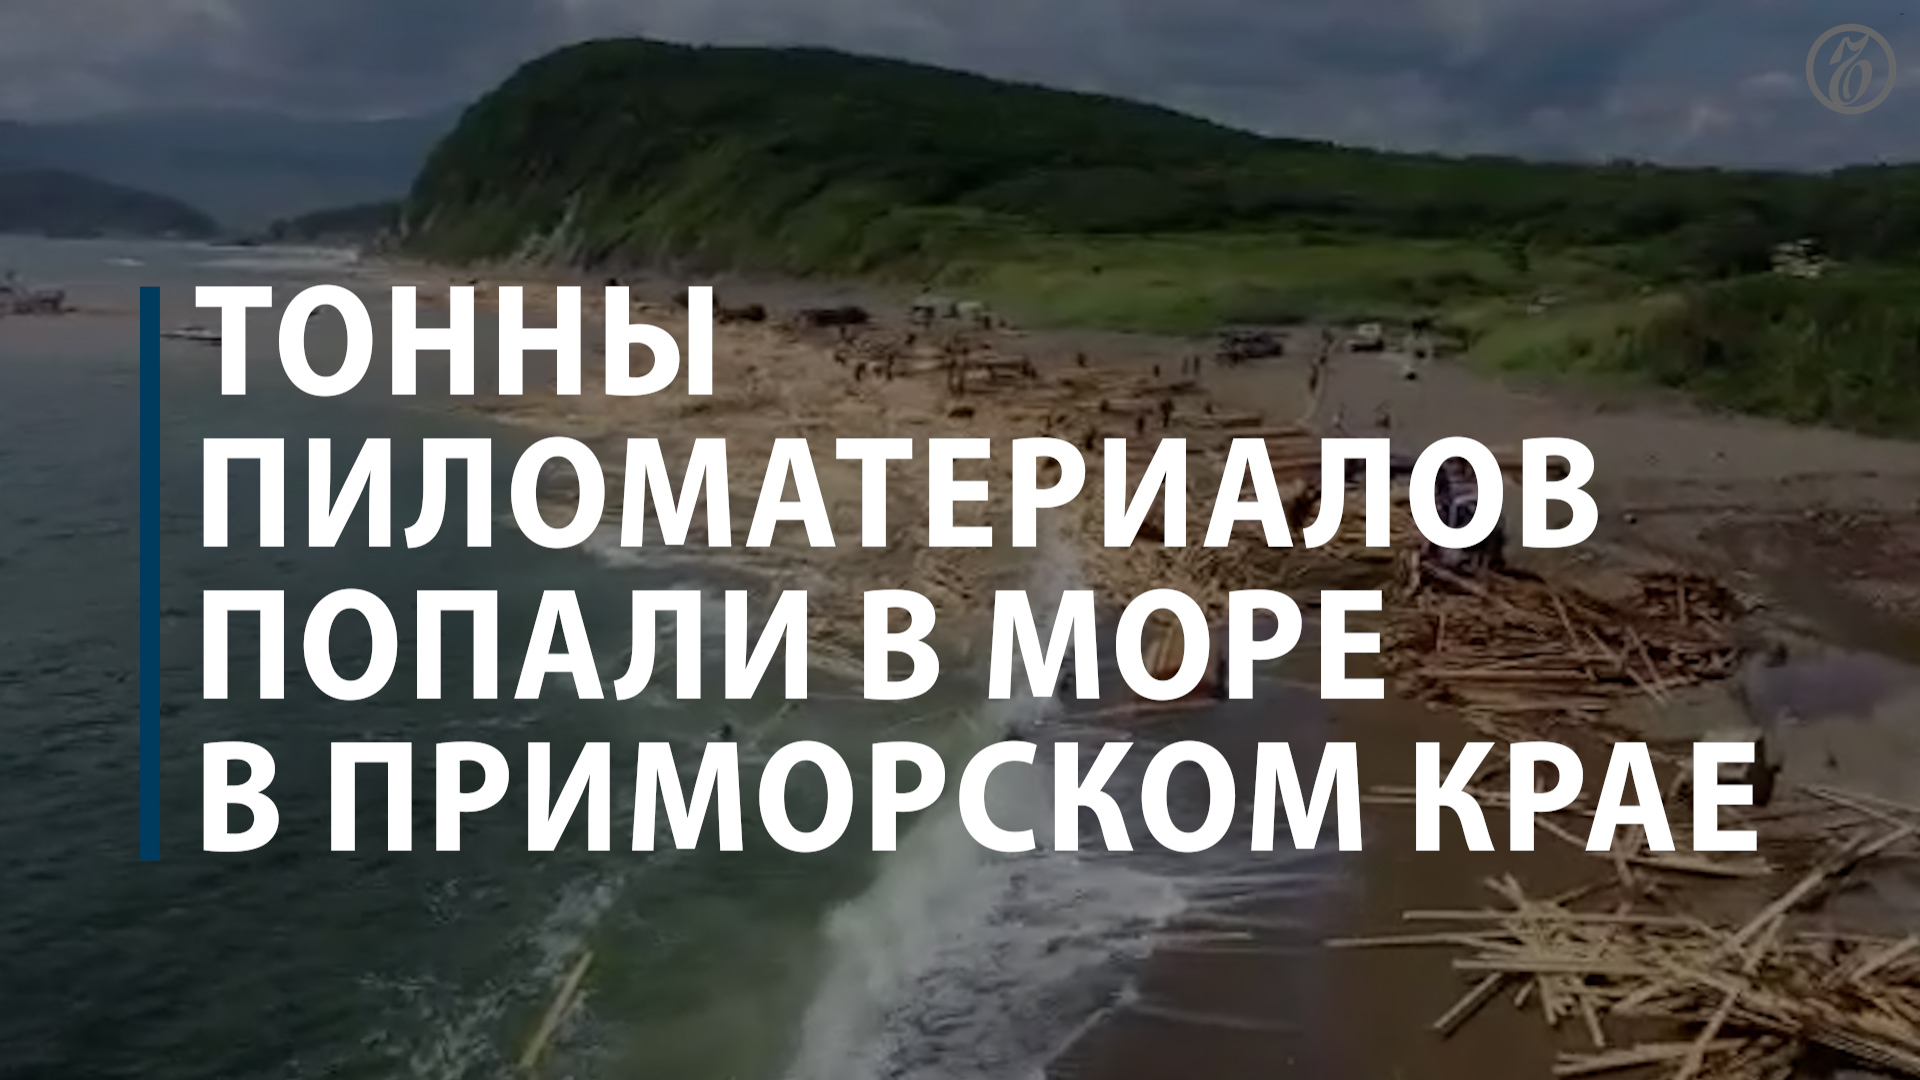 Тонны пиломатериалов попали в море в Приморске